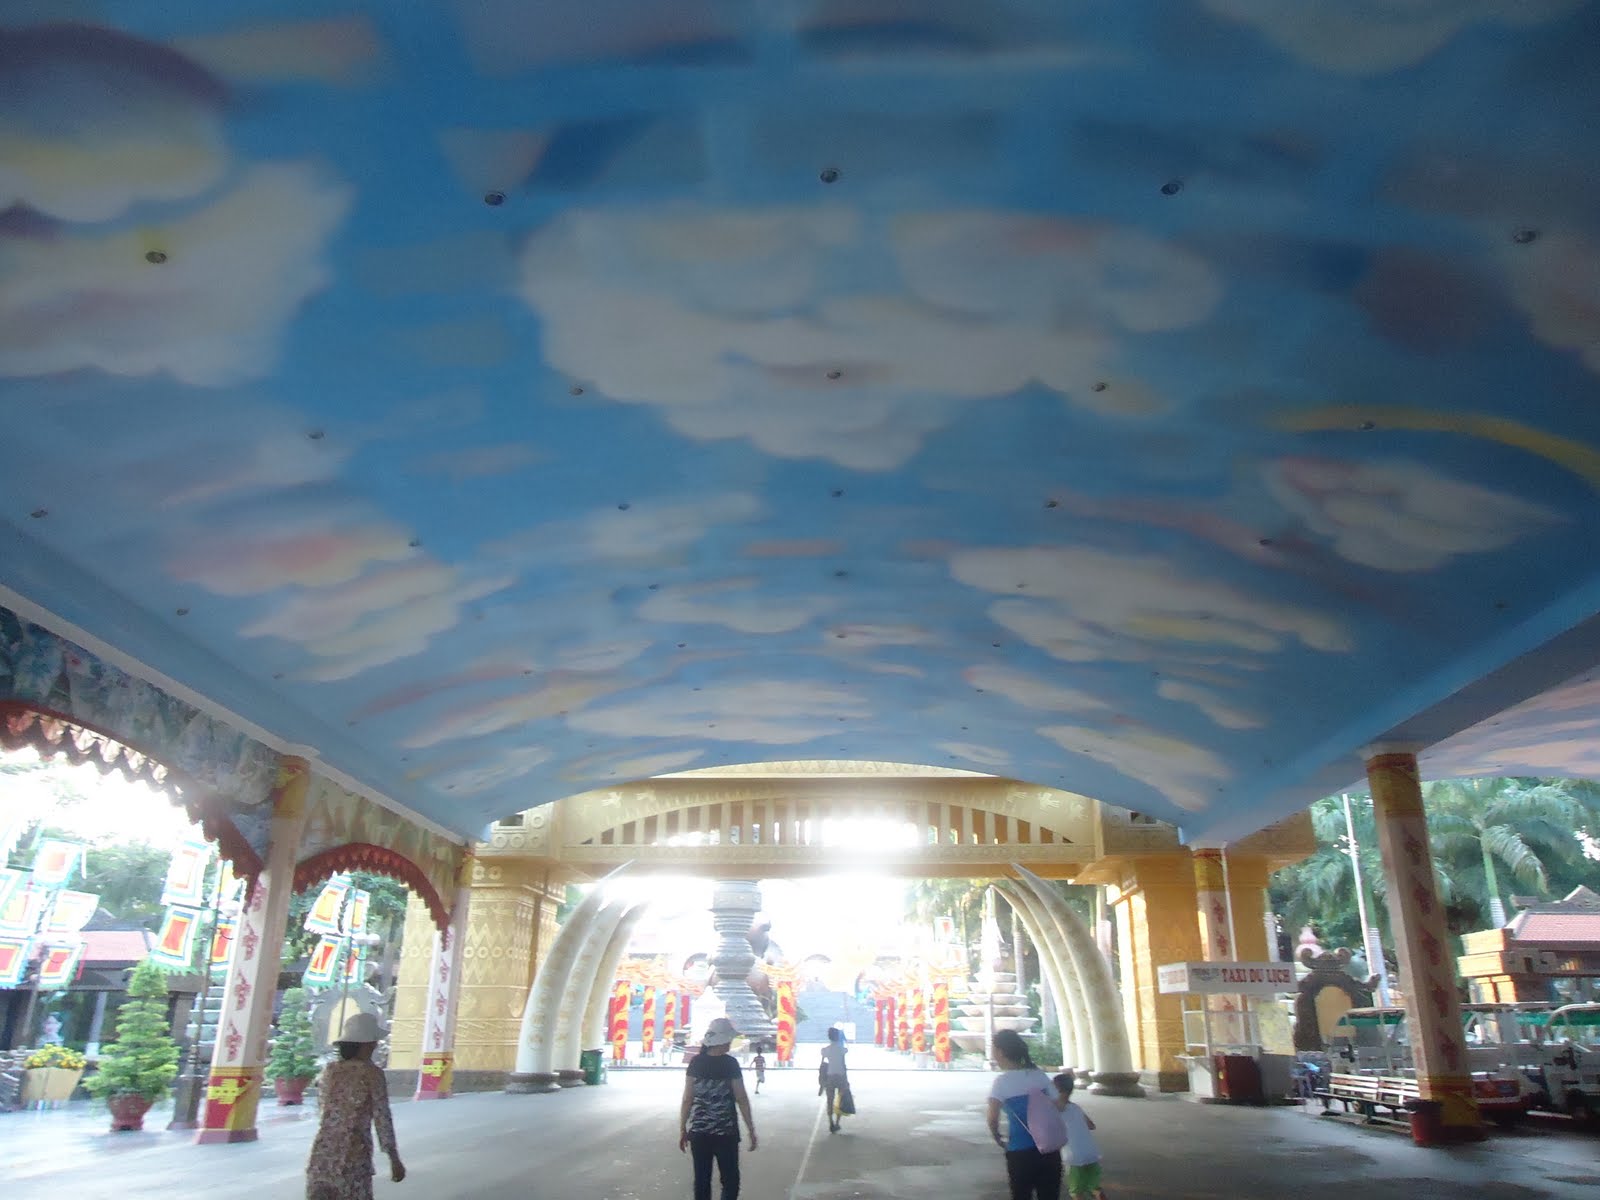 picswallpaper com sky ceiling murals ajilbab com portal sky ceiling